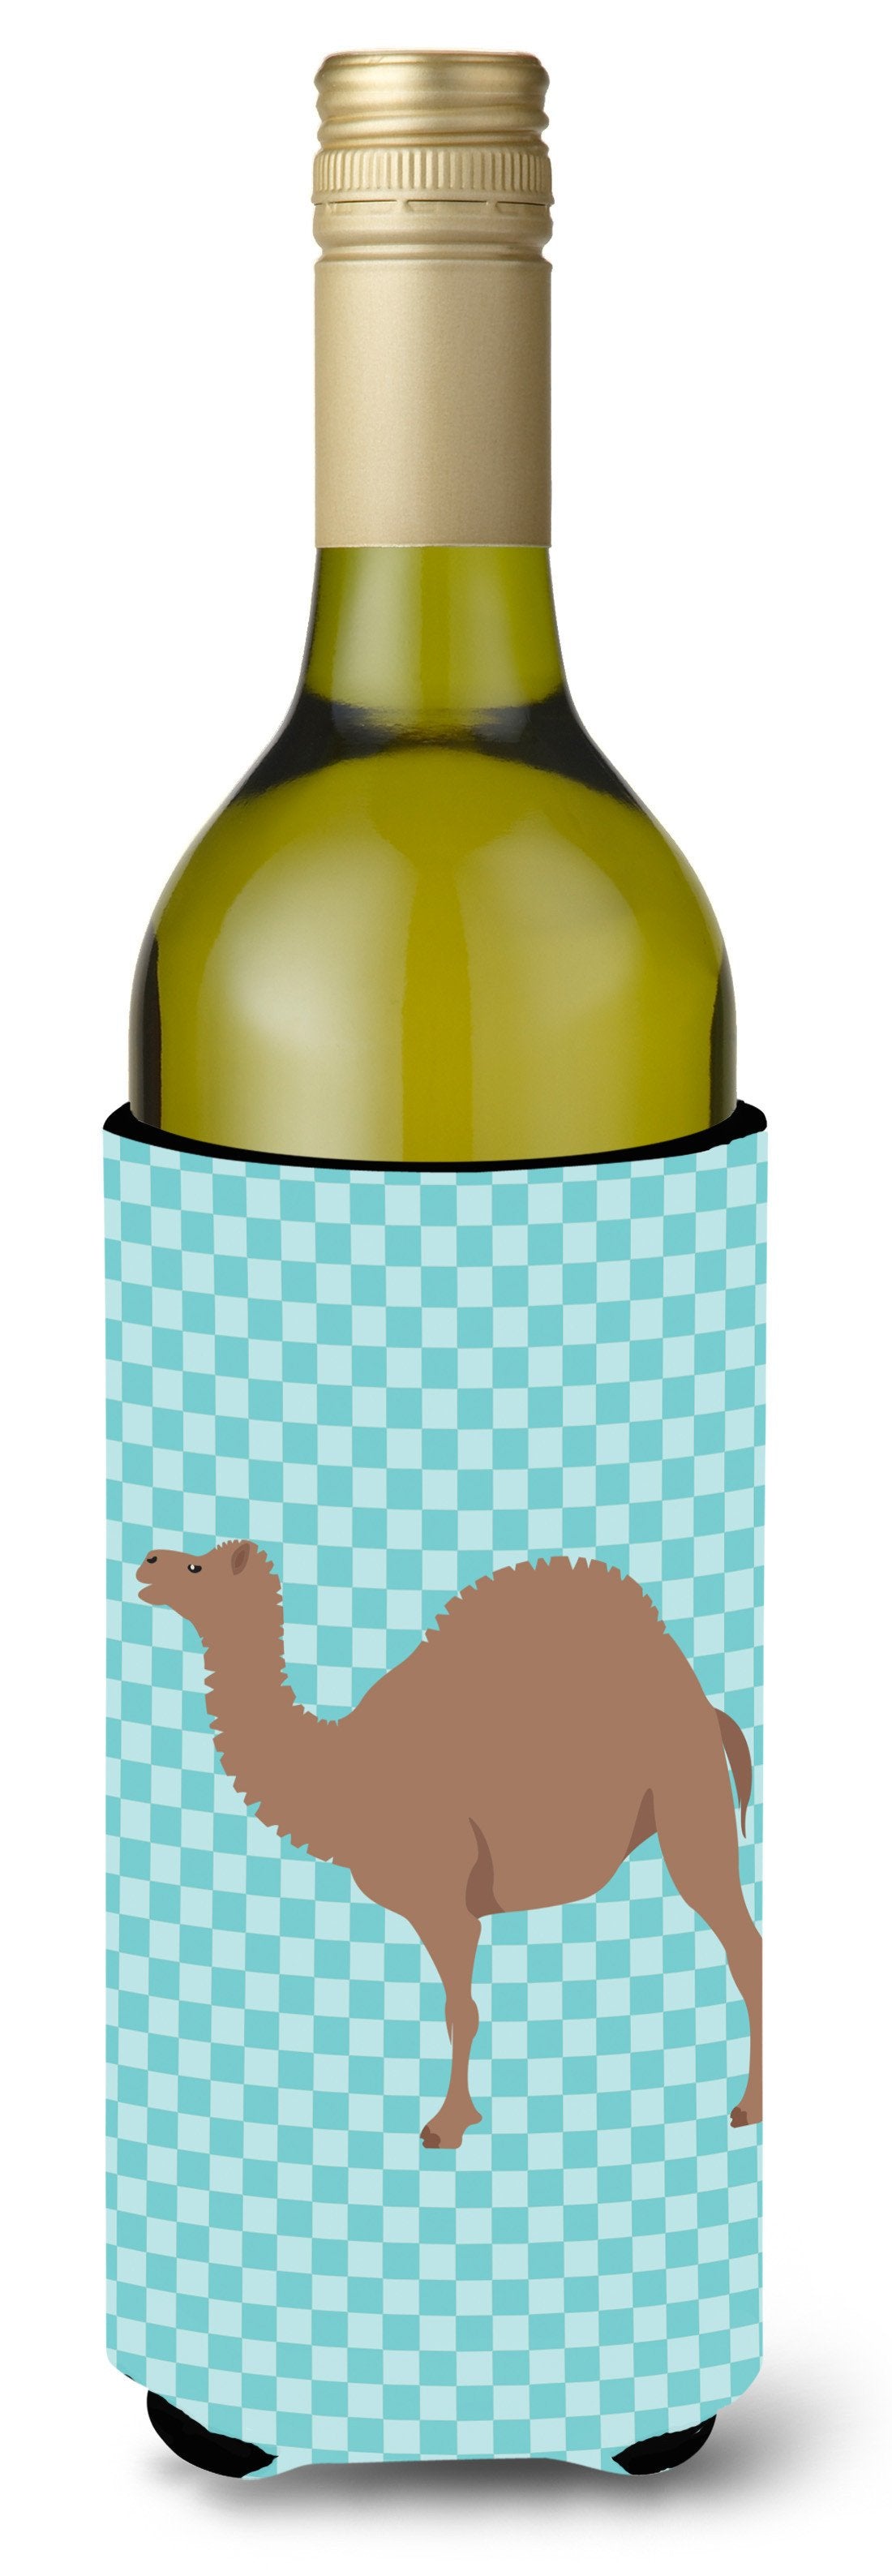 F1 Hybrid Camel Blue Check Wine Bottle Beverge Insulator Hugger BB7993LITERK by Caroline's Treasures